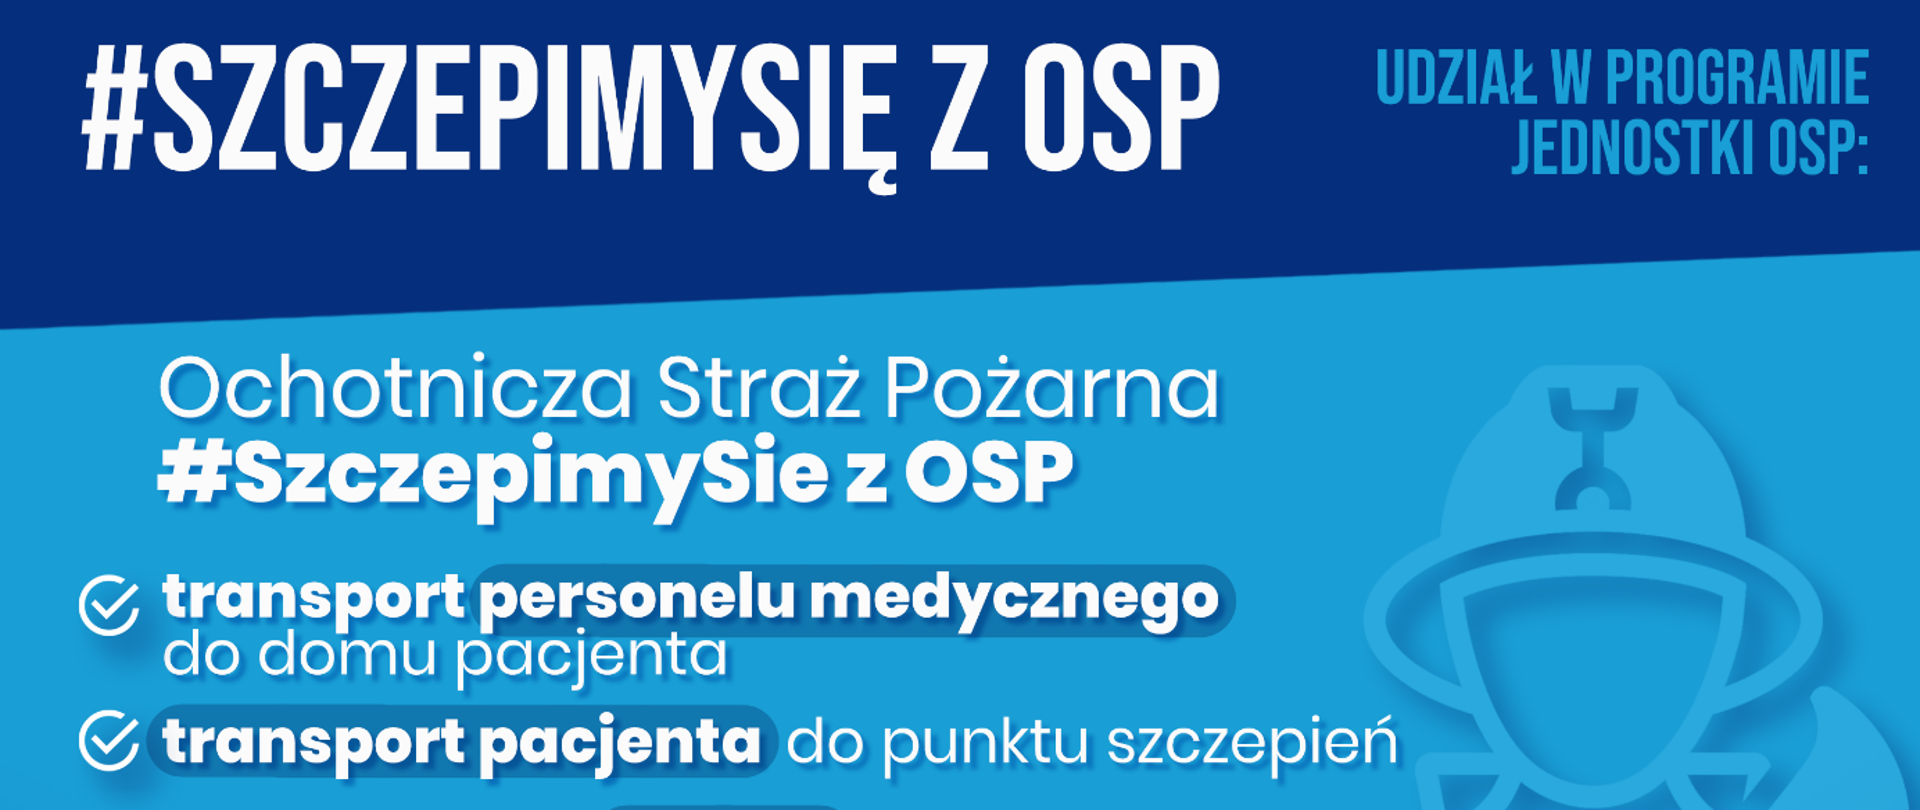 logo programu SzczepimySIę z OSP